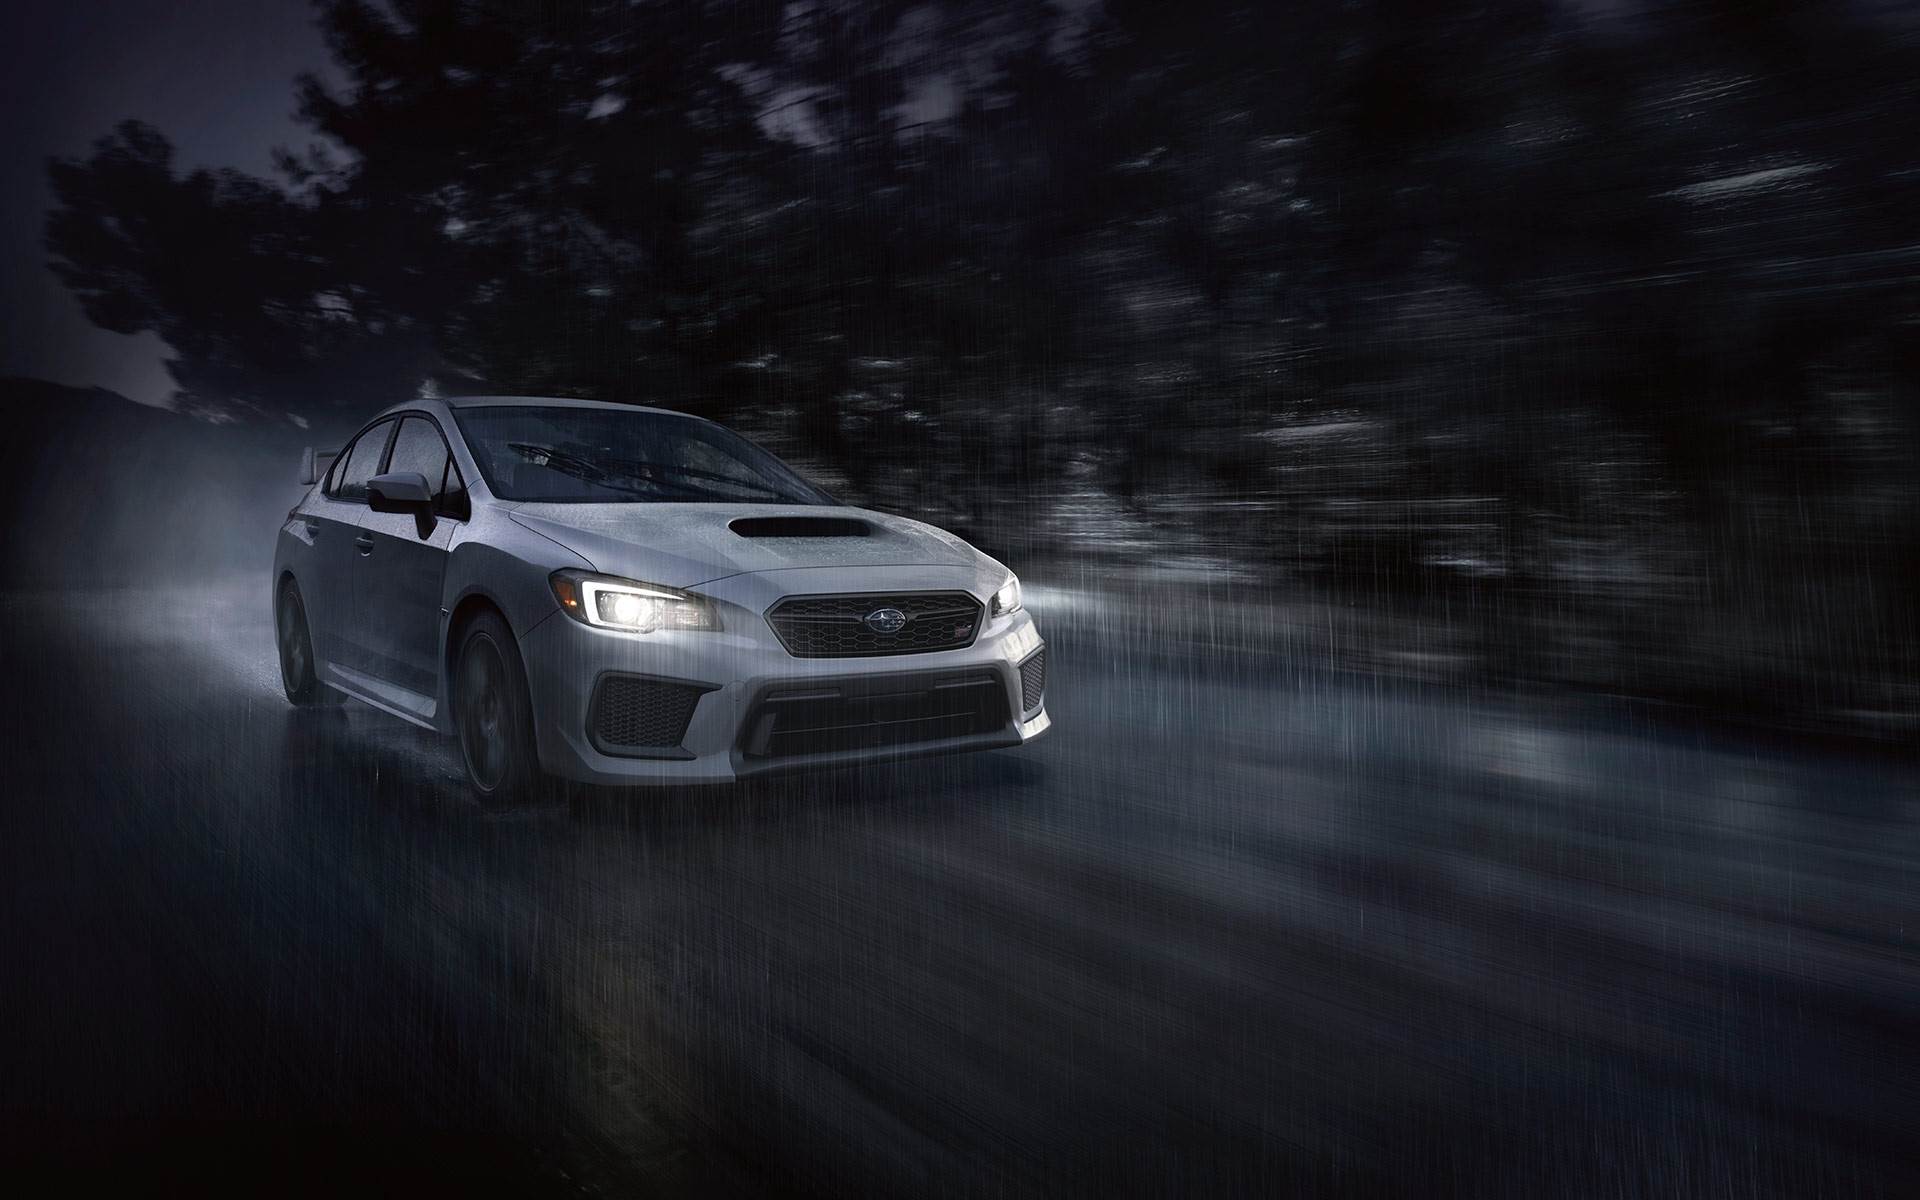 Free download 2019 Subaru WRX STI in night in rain in water on road 4k